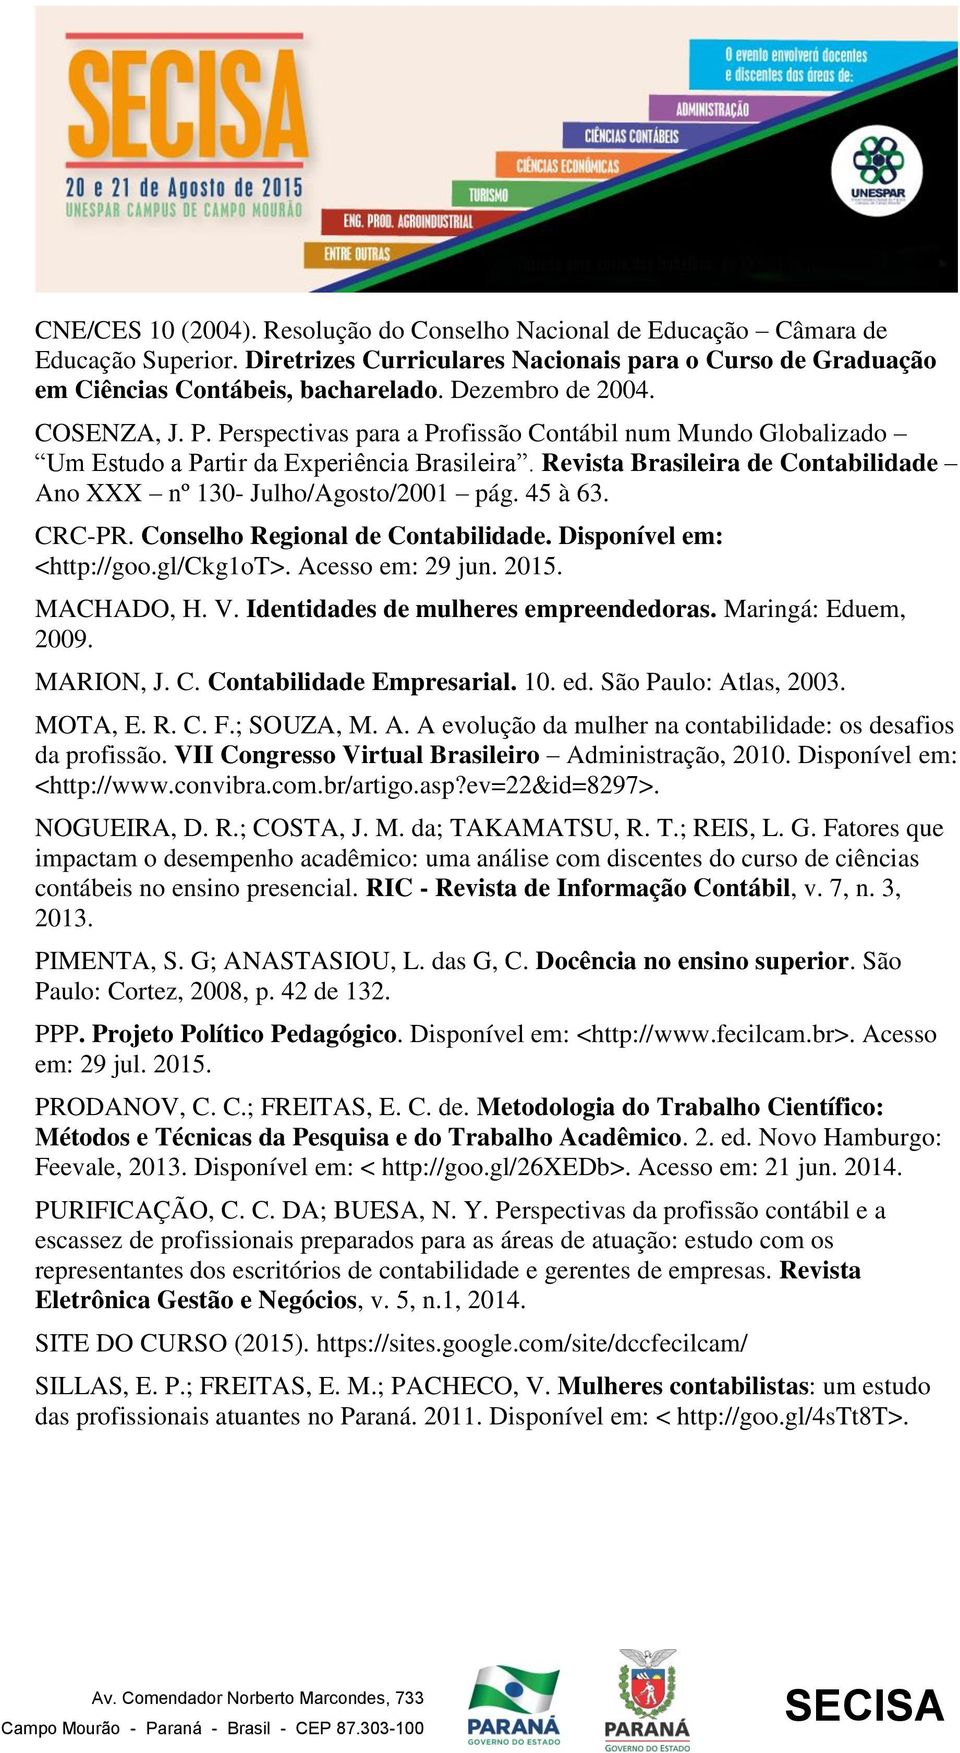 Revista Brasileira de Contabilidade Ano XXX nº 130- Julho/Agosto/2001 pág. 45 à 63. CRC-PR. Conselho Regional de Contabilidade. Disponível em: <http://goo.gl/ckg1ot>. Acesso em: 29 jun. 2015.